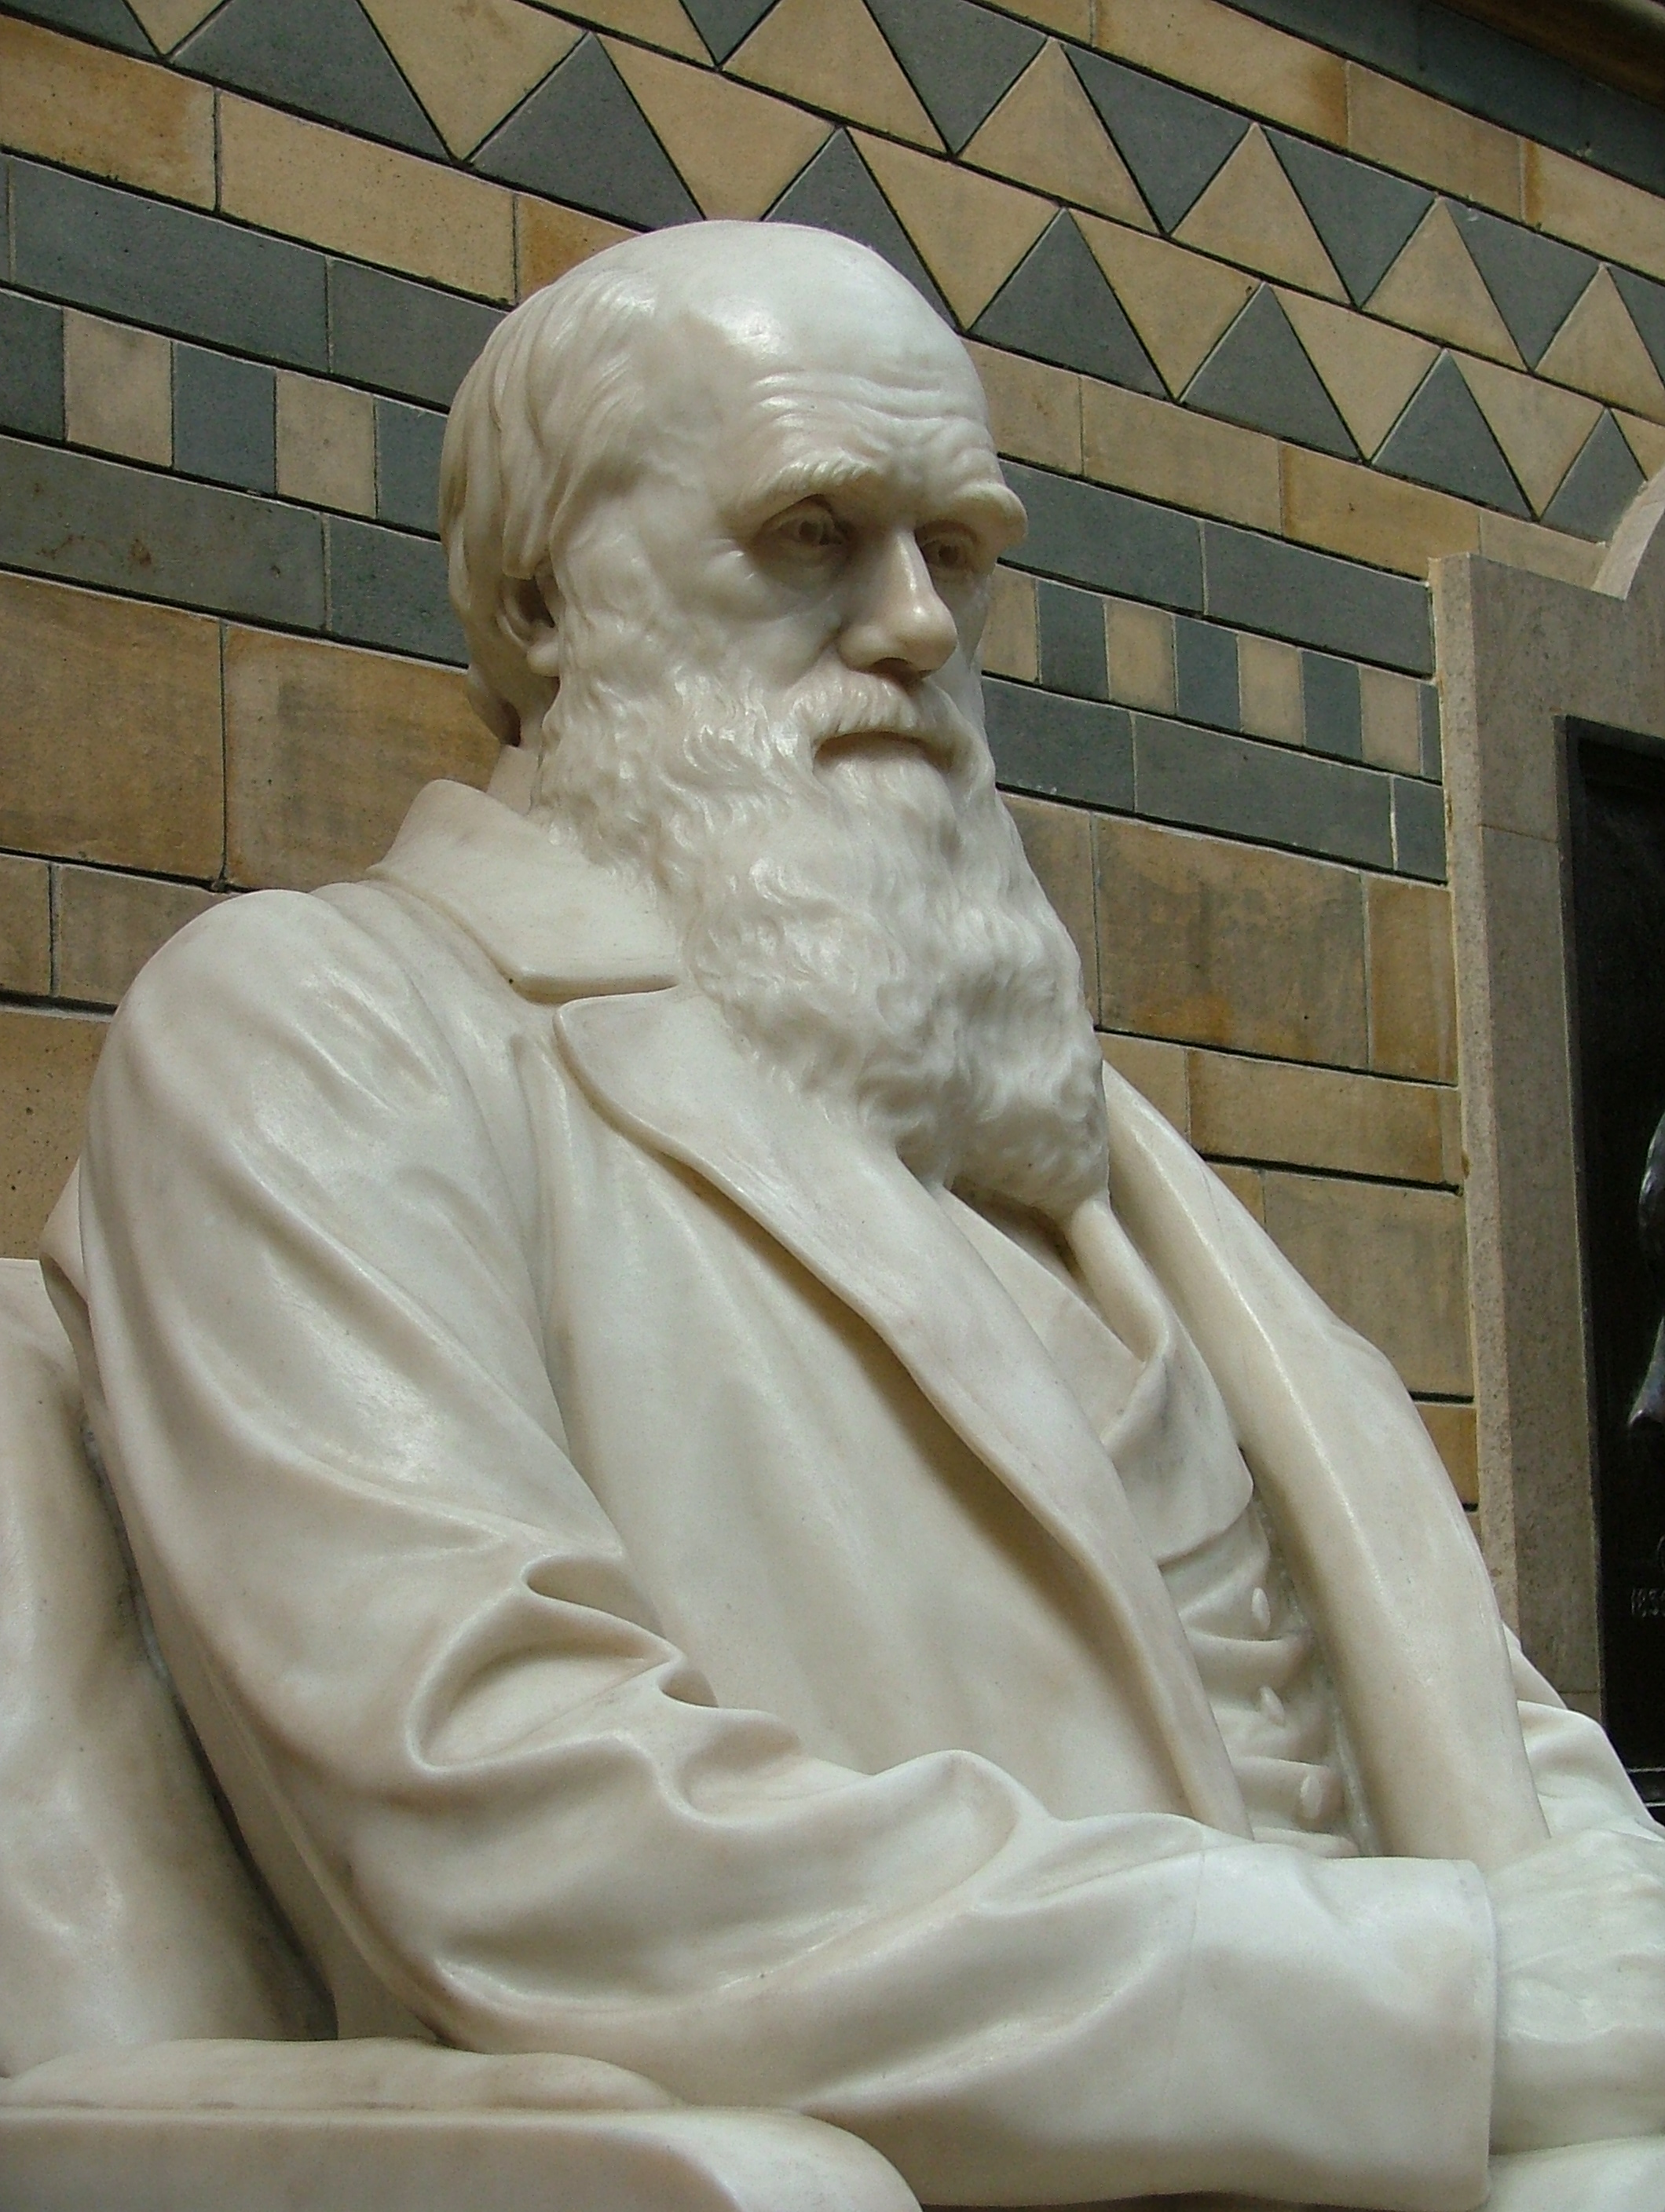 Darwin statue in the NHM